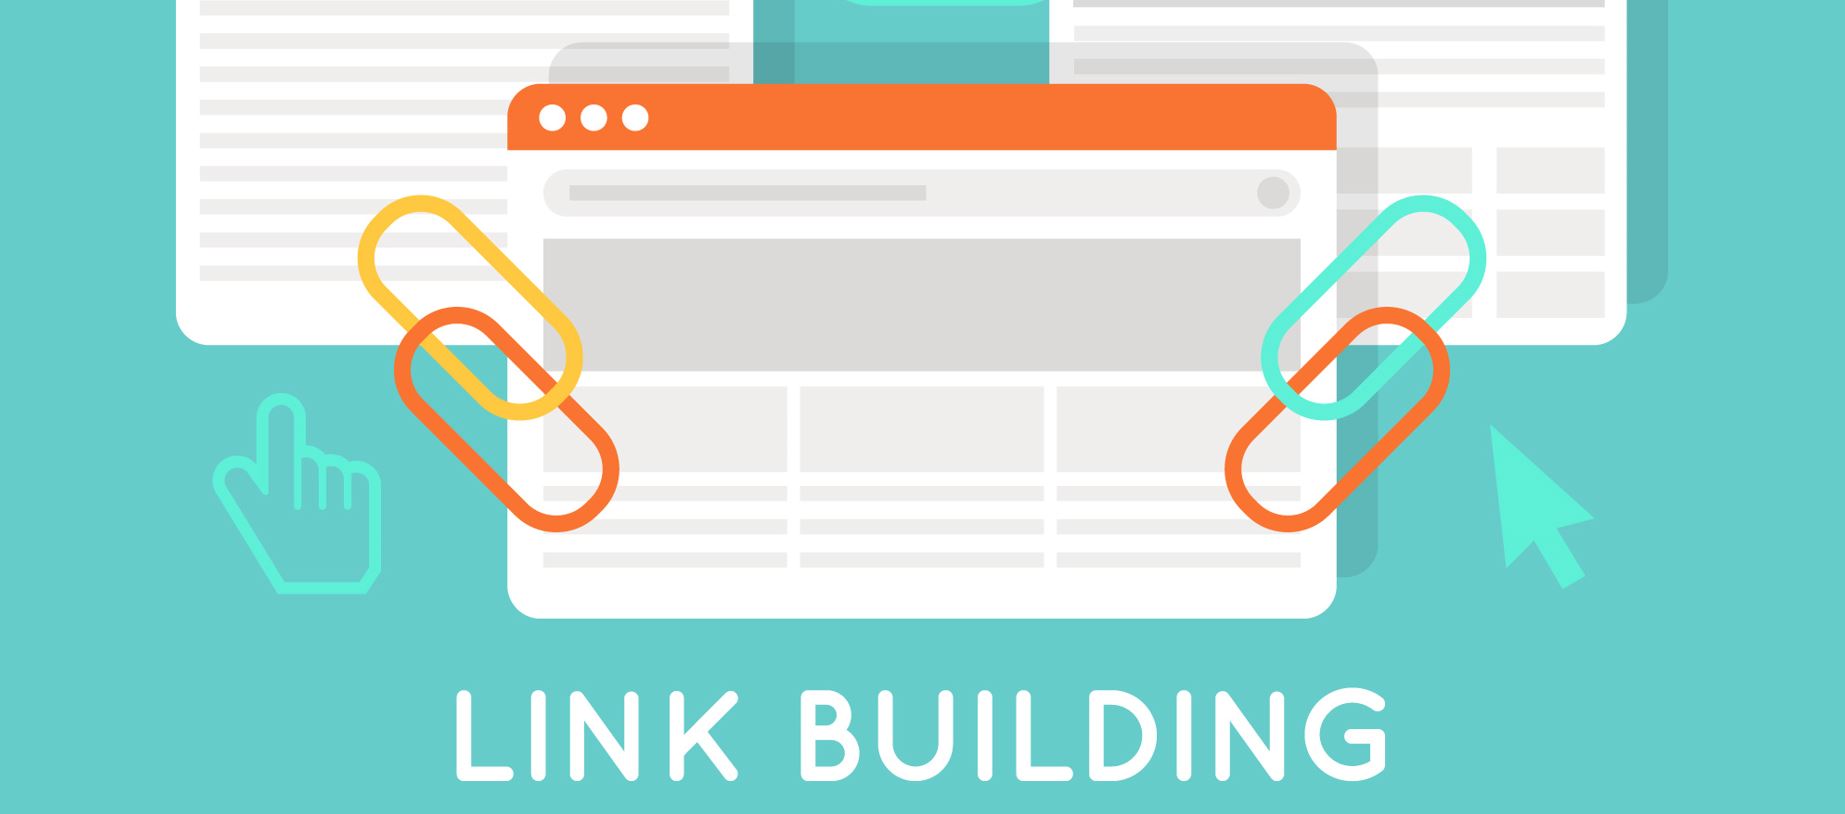 LINK BUILDING VOOR WEBSHOPS